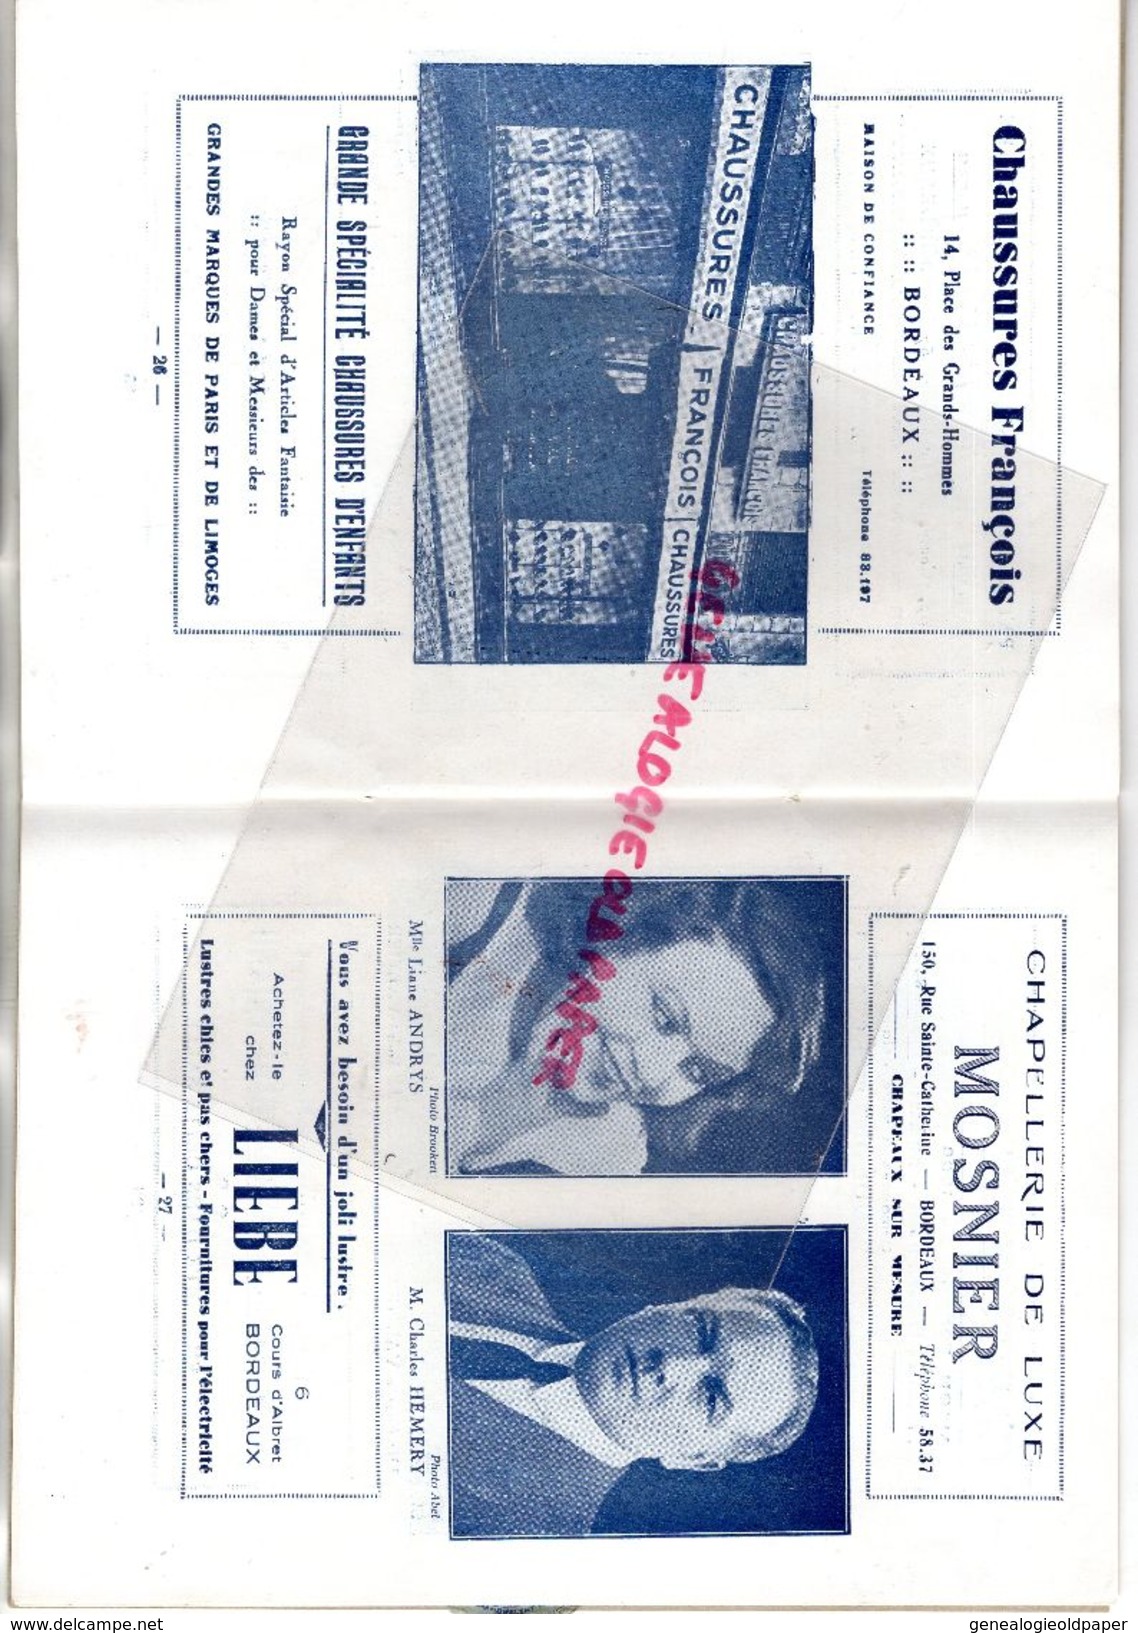 33- BORDEAUX- PROGRAMME THEATRE TRIANON SAISON 1932-33-A.CAZAUBON LE BOUSCAT-UNIVERSAL HOTEL-DARCY-CASTERA-LOUIS LEGER